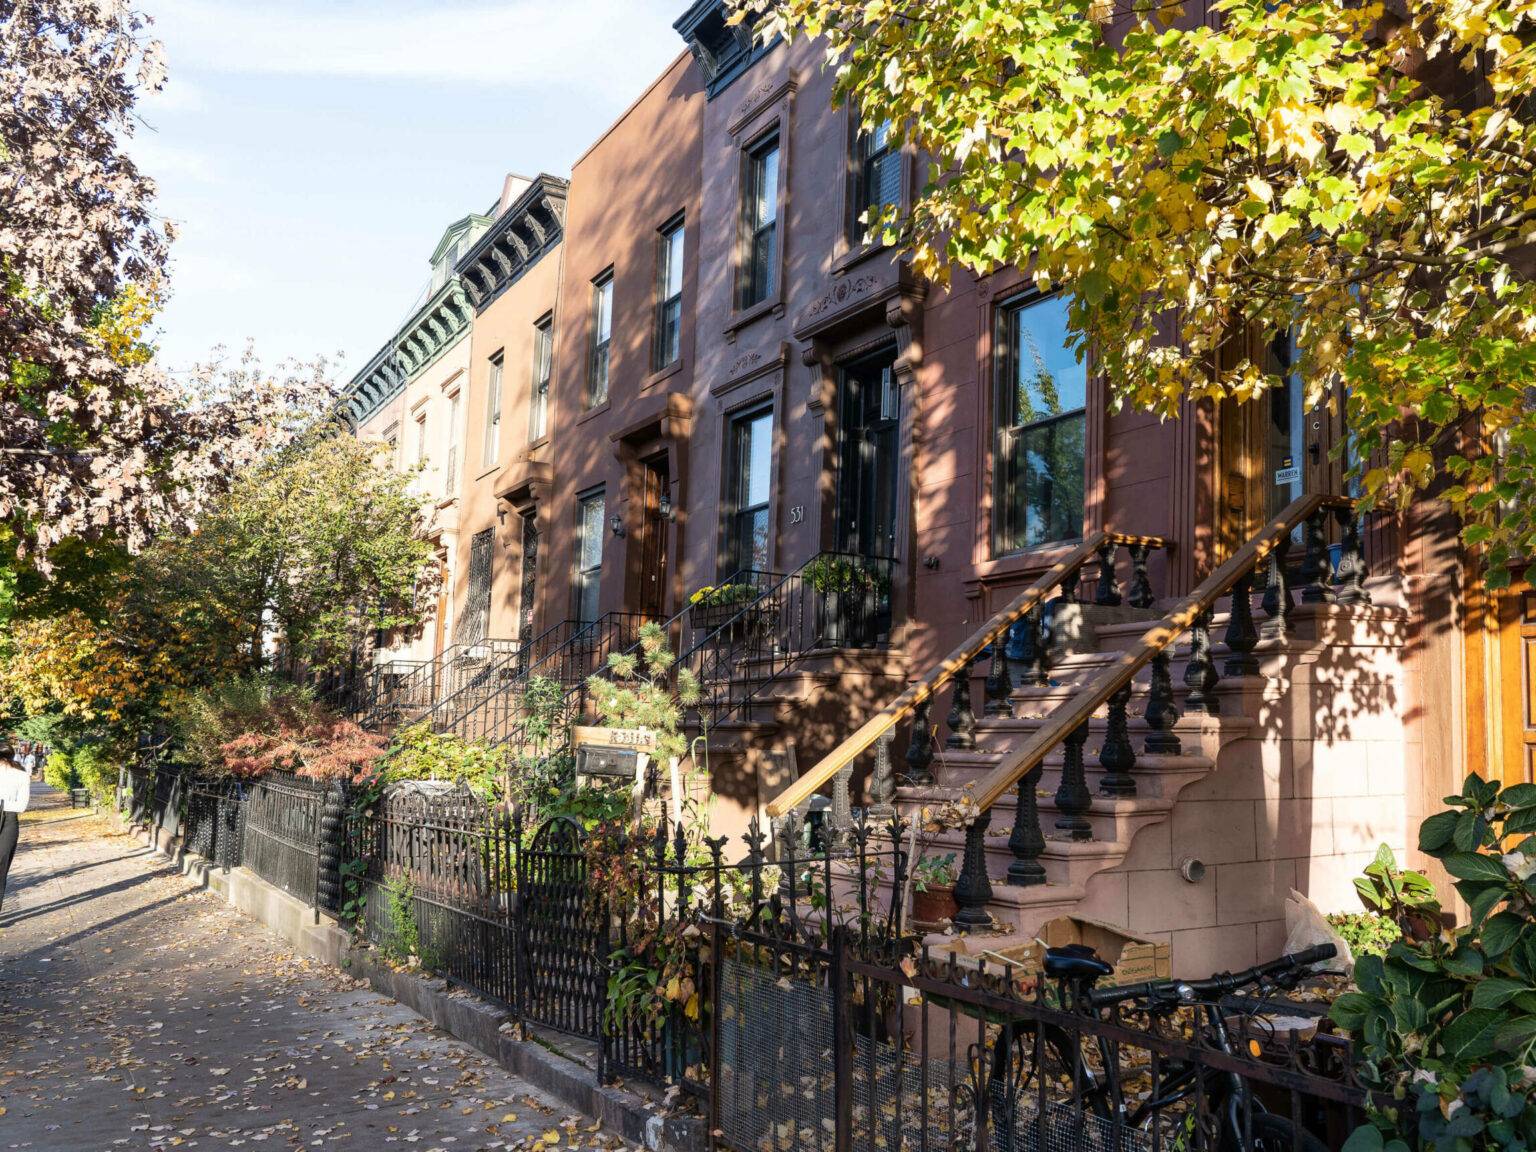 Die Brownstone Houses, ein Wahrzeichen von Brooklyn, sind Reihenhäuser in verschiedenen Brauntönen mit kleine Gärten und Treppen die zu den Häusertüren führen.